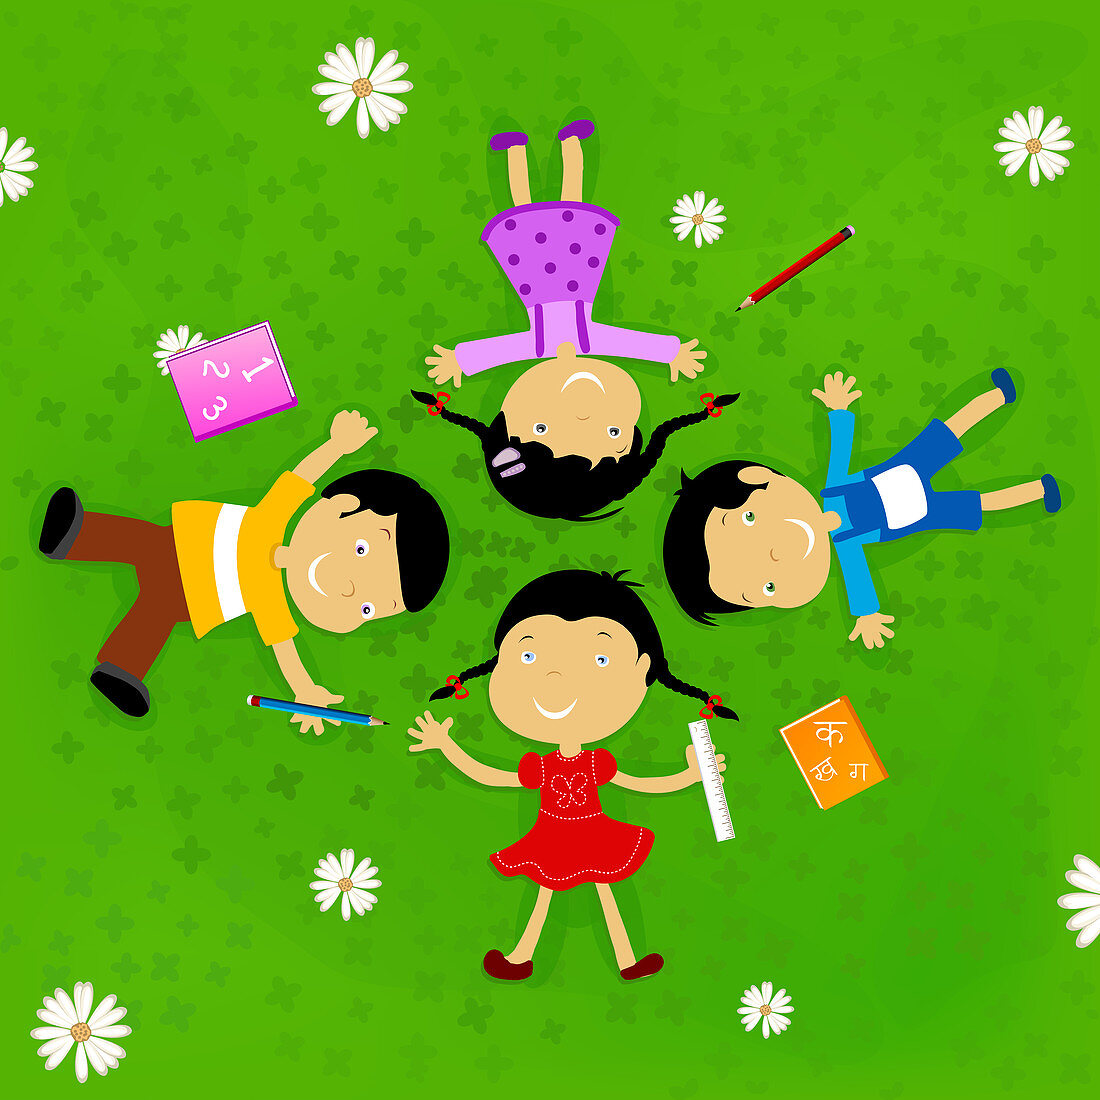 Children lying on grass, illustration